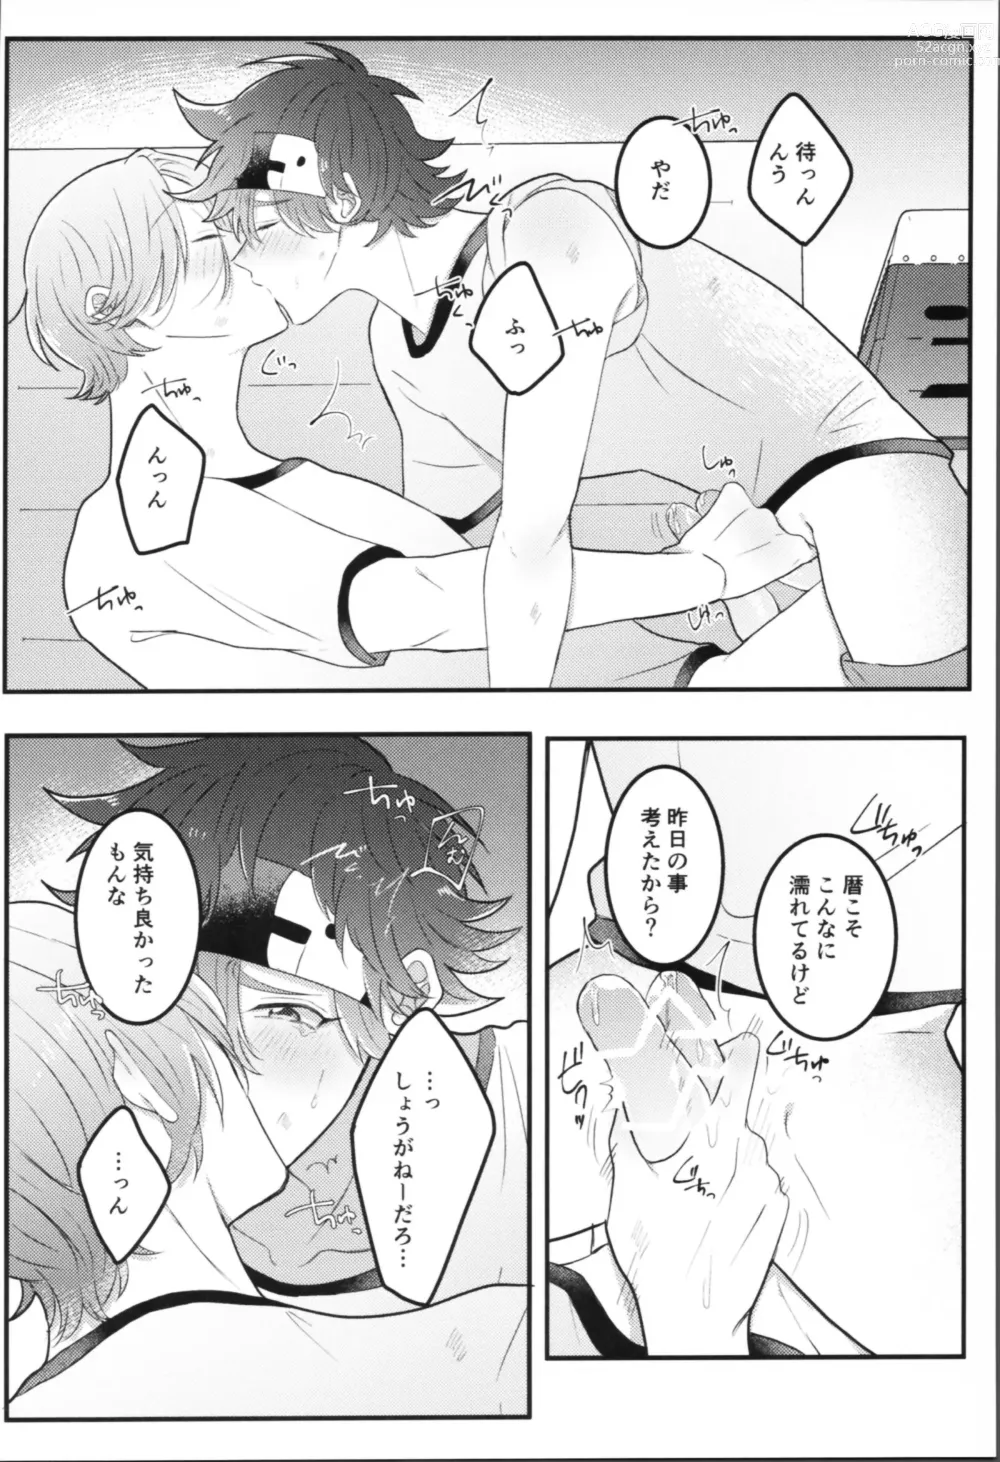 Page 9 of doujinshi Sense-saborimasu